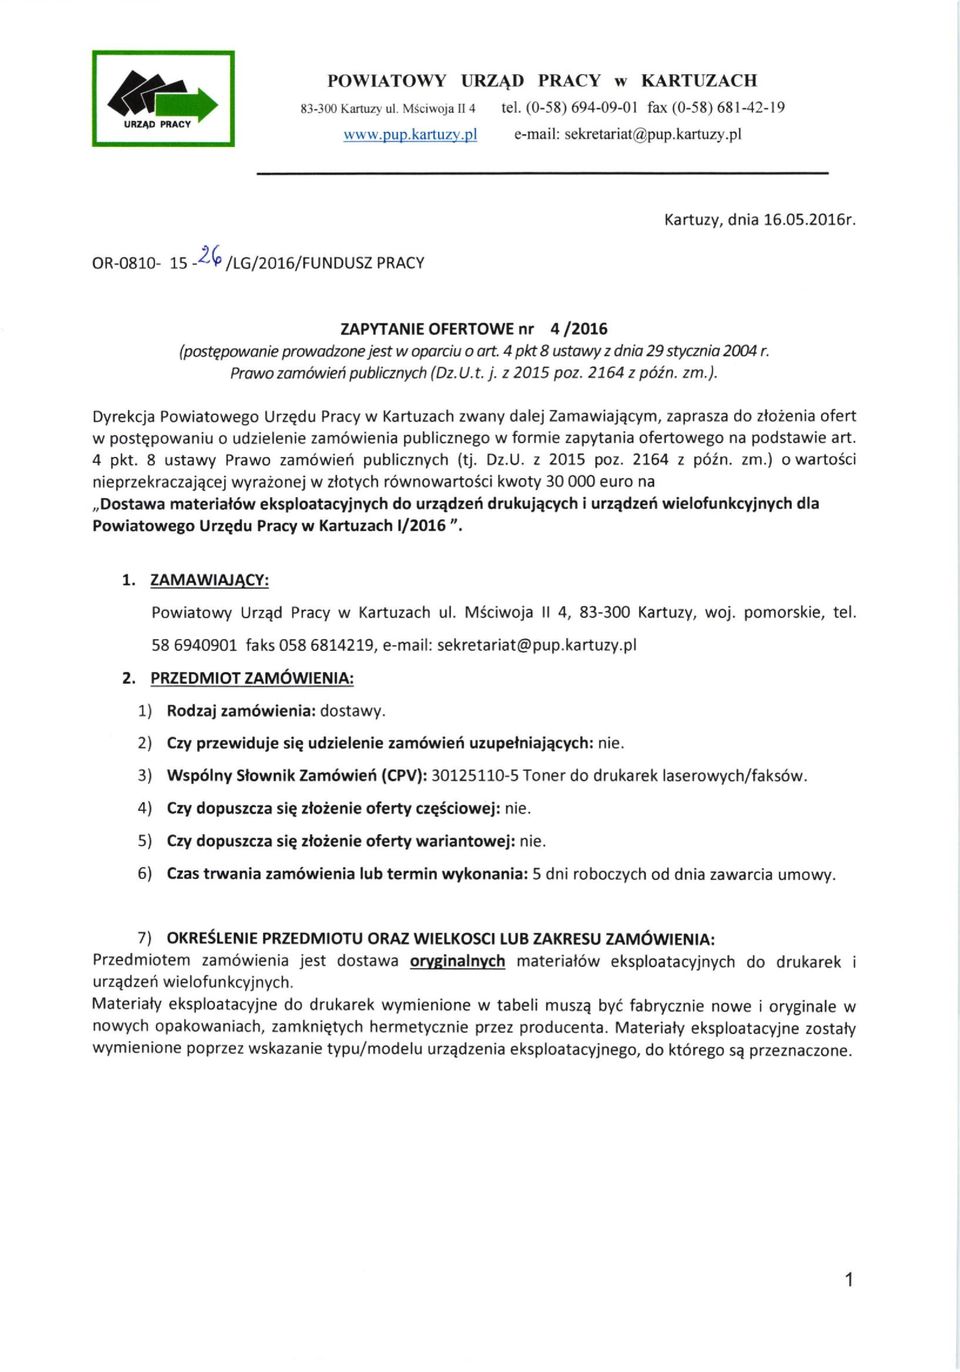 Dyrekcja Powiatowego Urzqdu Pracy w Kartuzach zwany dalej Zamawiajqcym, zaprasza do zloienia ofert w postqpowaniu o udzielenie zam6wienia publicznego w formie zapytania ofertowego na podstawie art.